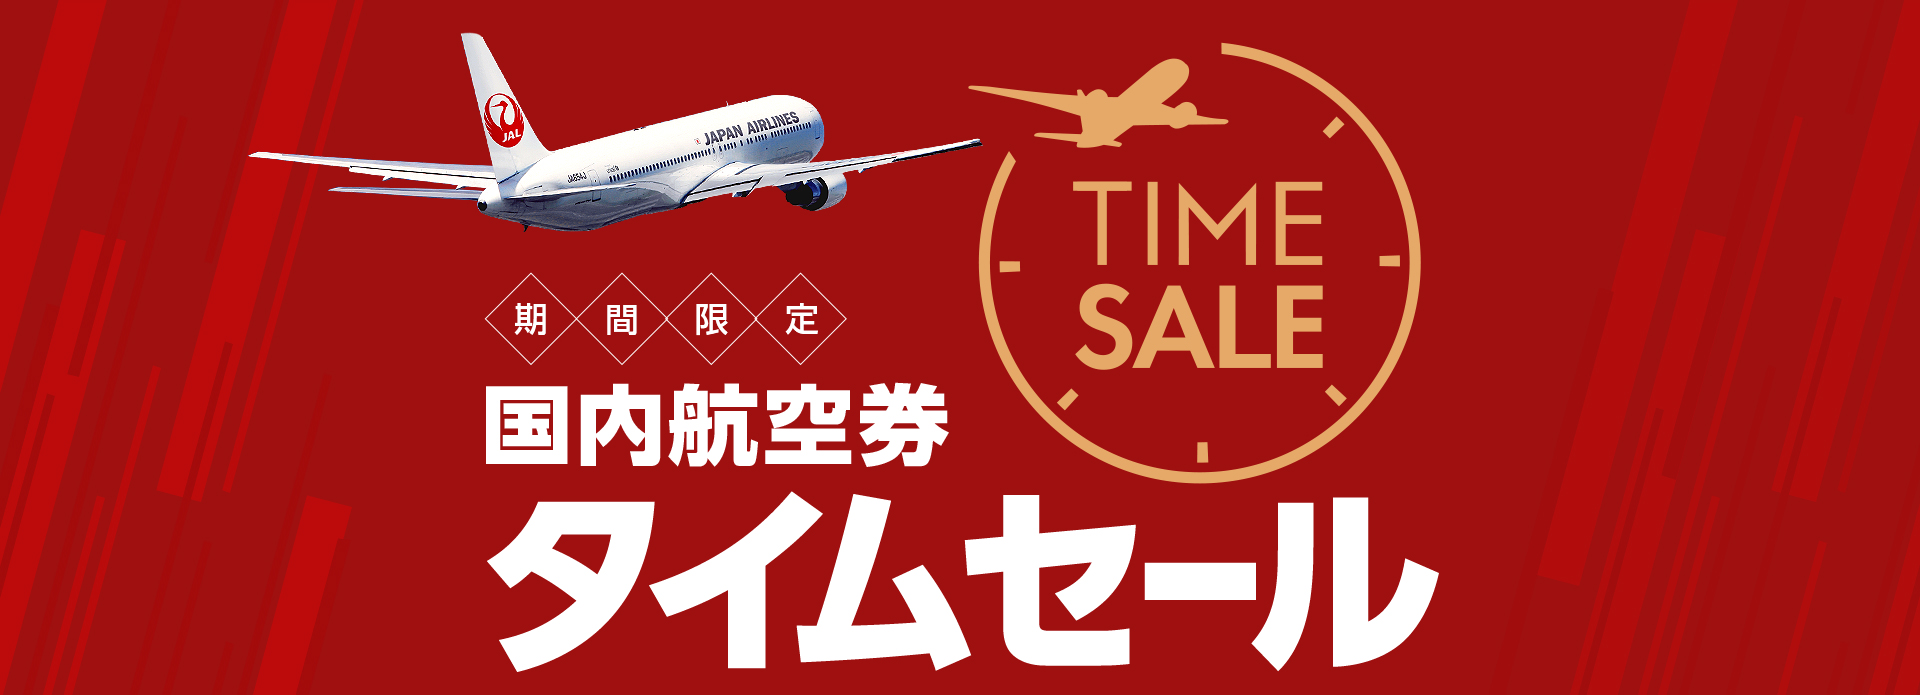 JAL、8月3日から片道6,000円からとなる国内線のタイムセールを実施 